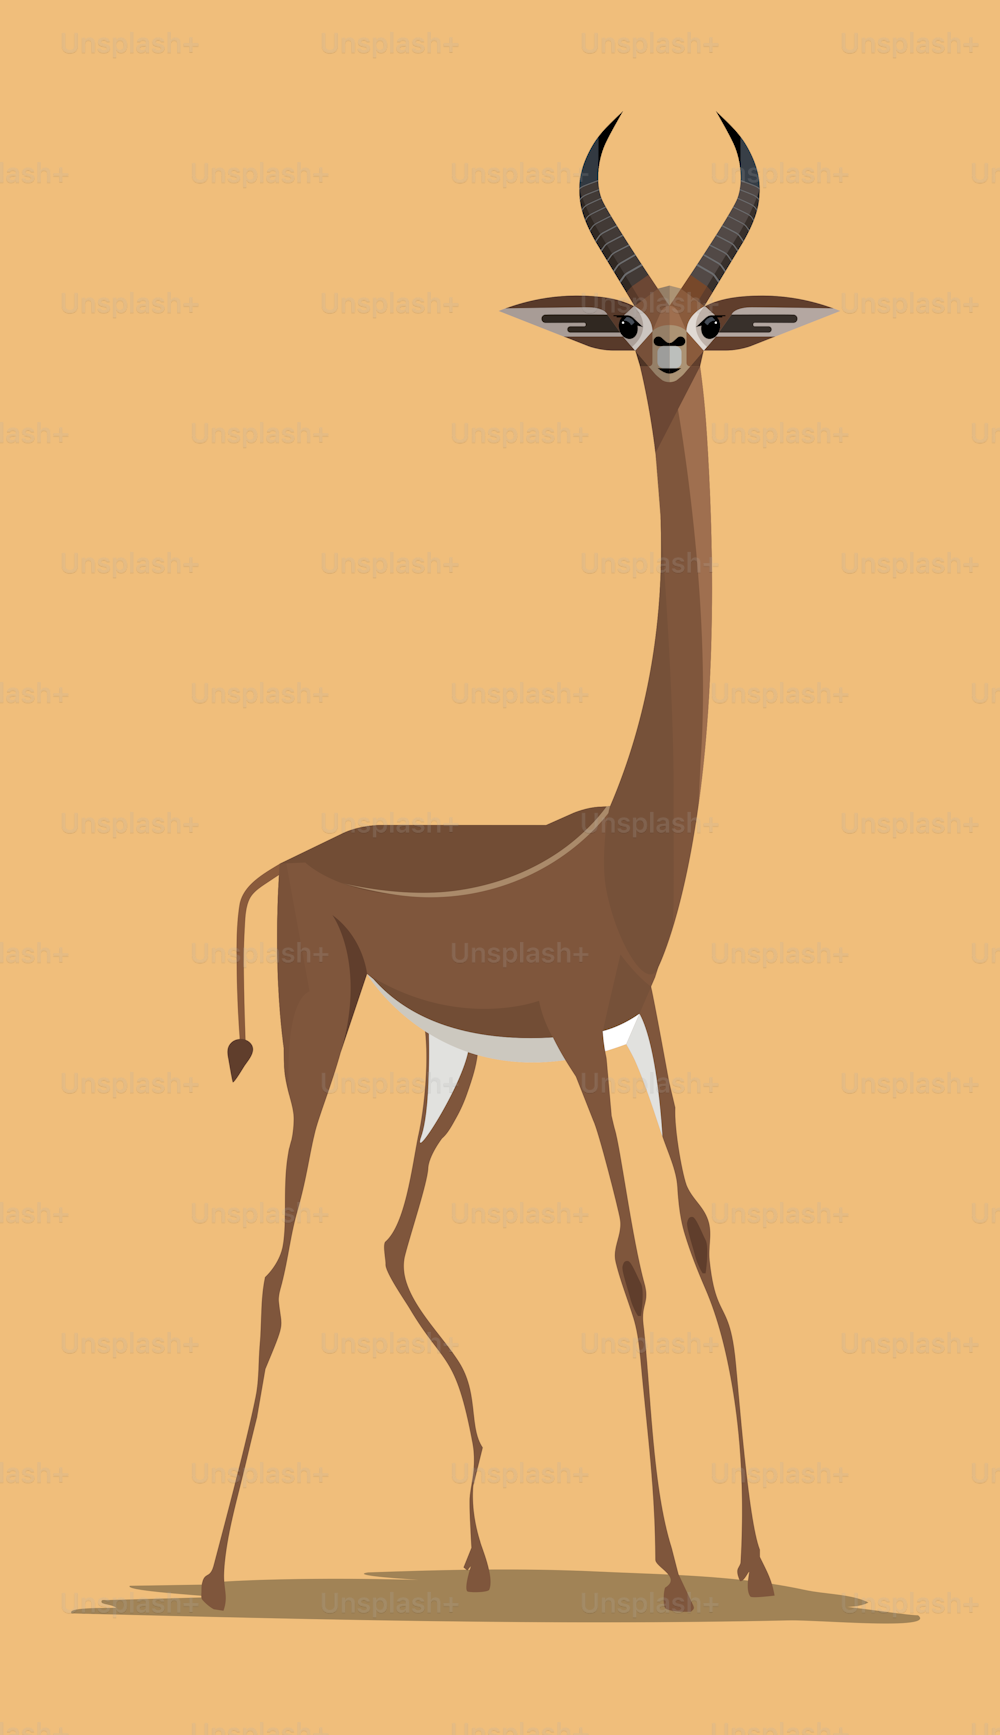 Gacela jirafa gerenuk macho elegante sobre fondo naranja, imagen estilizada, ilustración vectorial